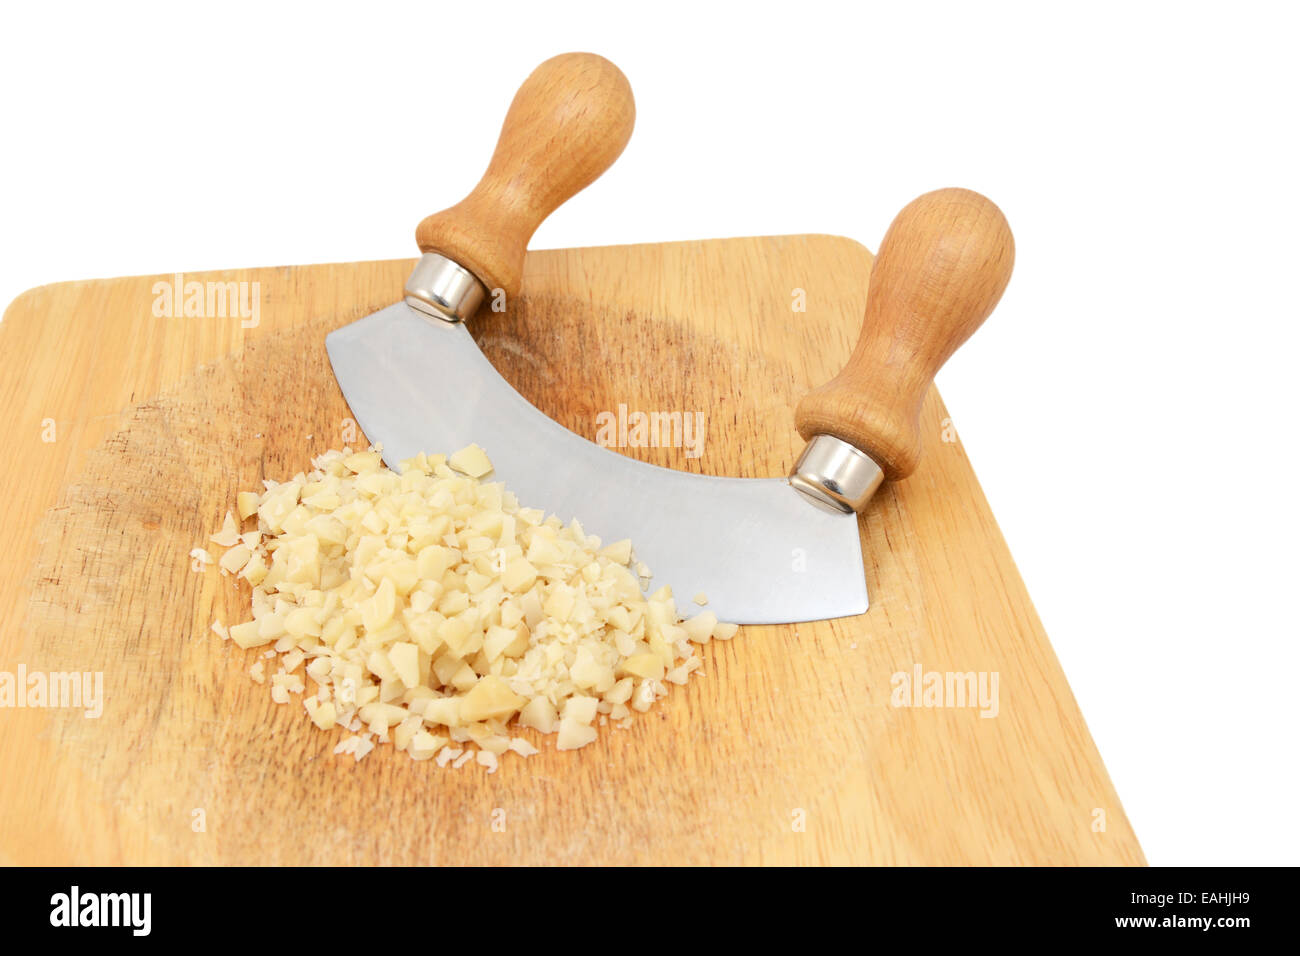 Fein gehackte Macadamia-Nüssen mit einem rockigen Messer auf ein Schneidbrett aus Holz, auf einem weißen Hintergrund isoliert Stockfoto